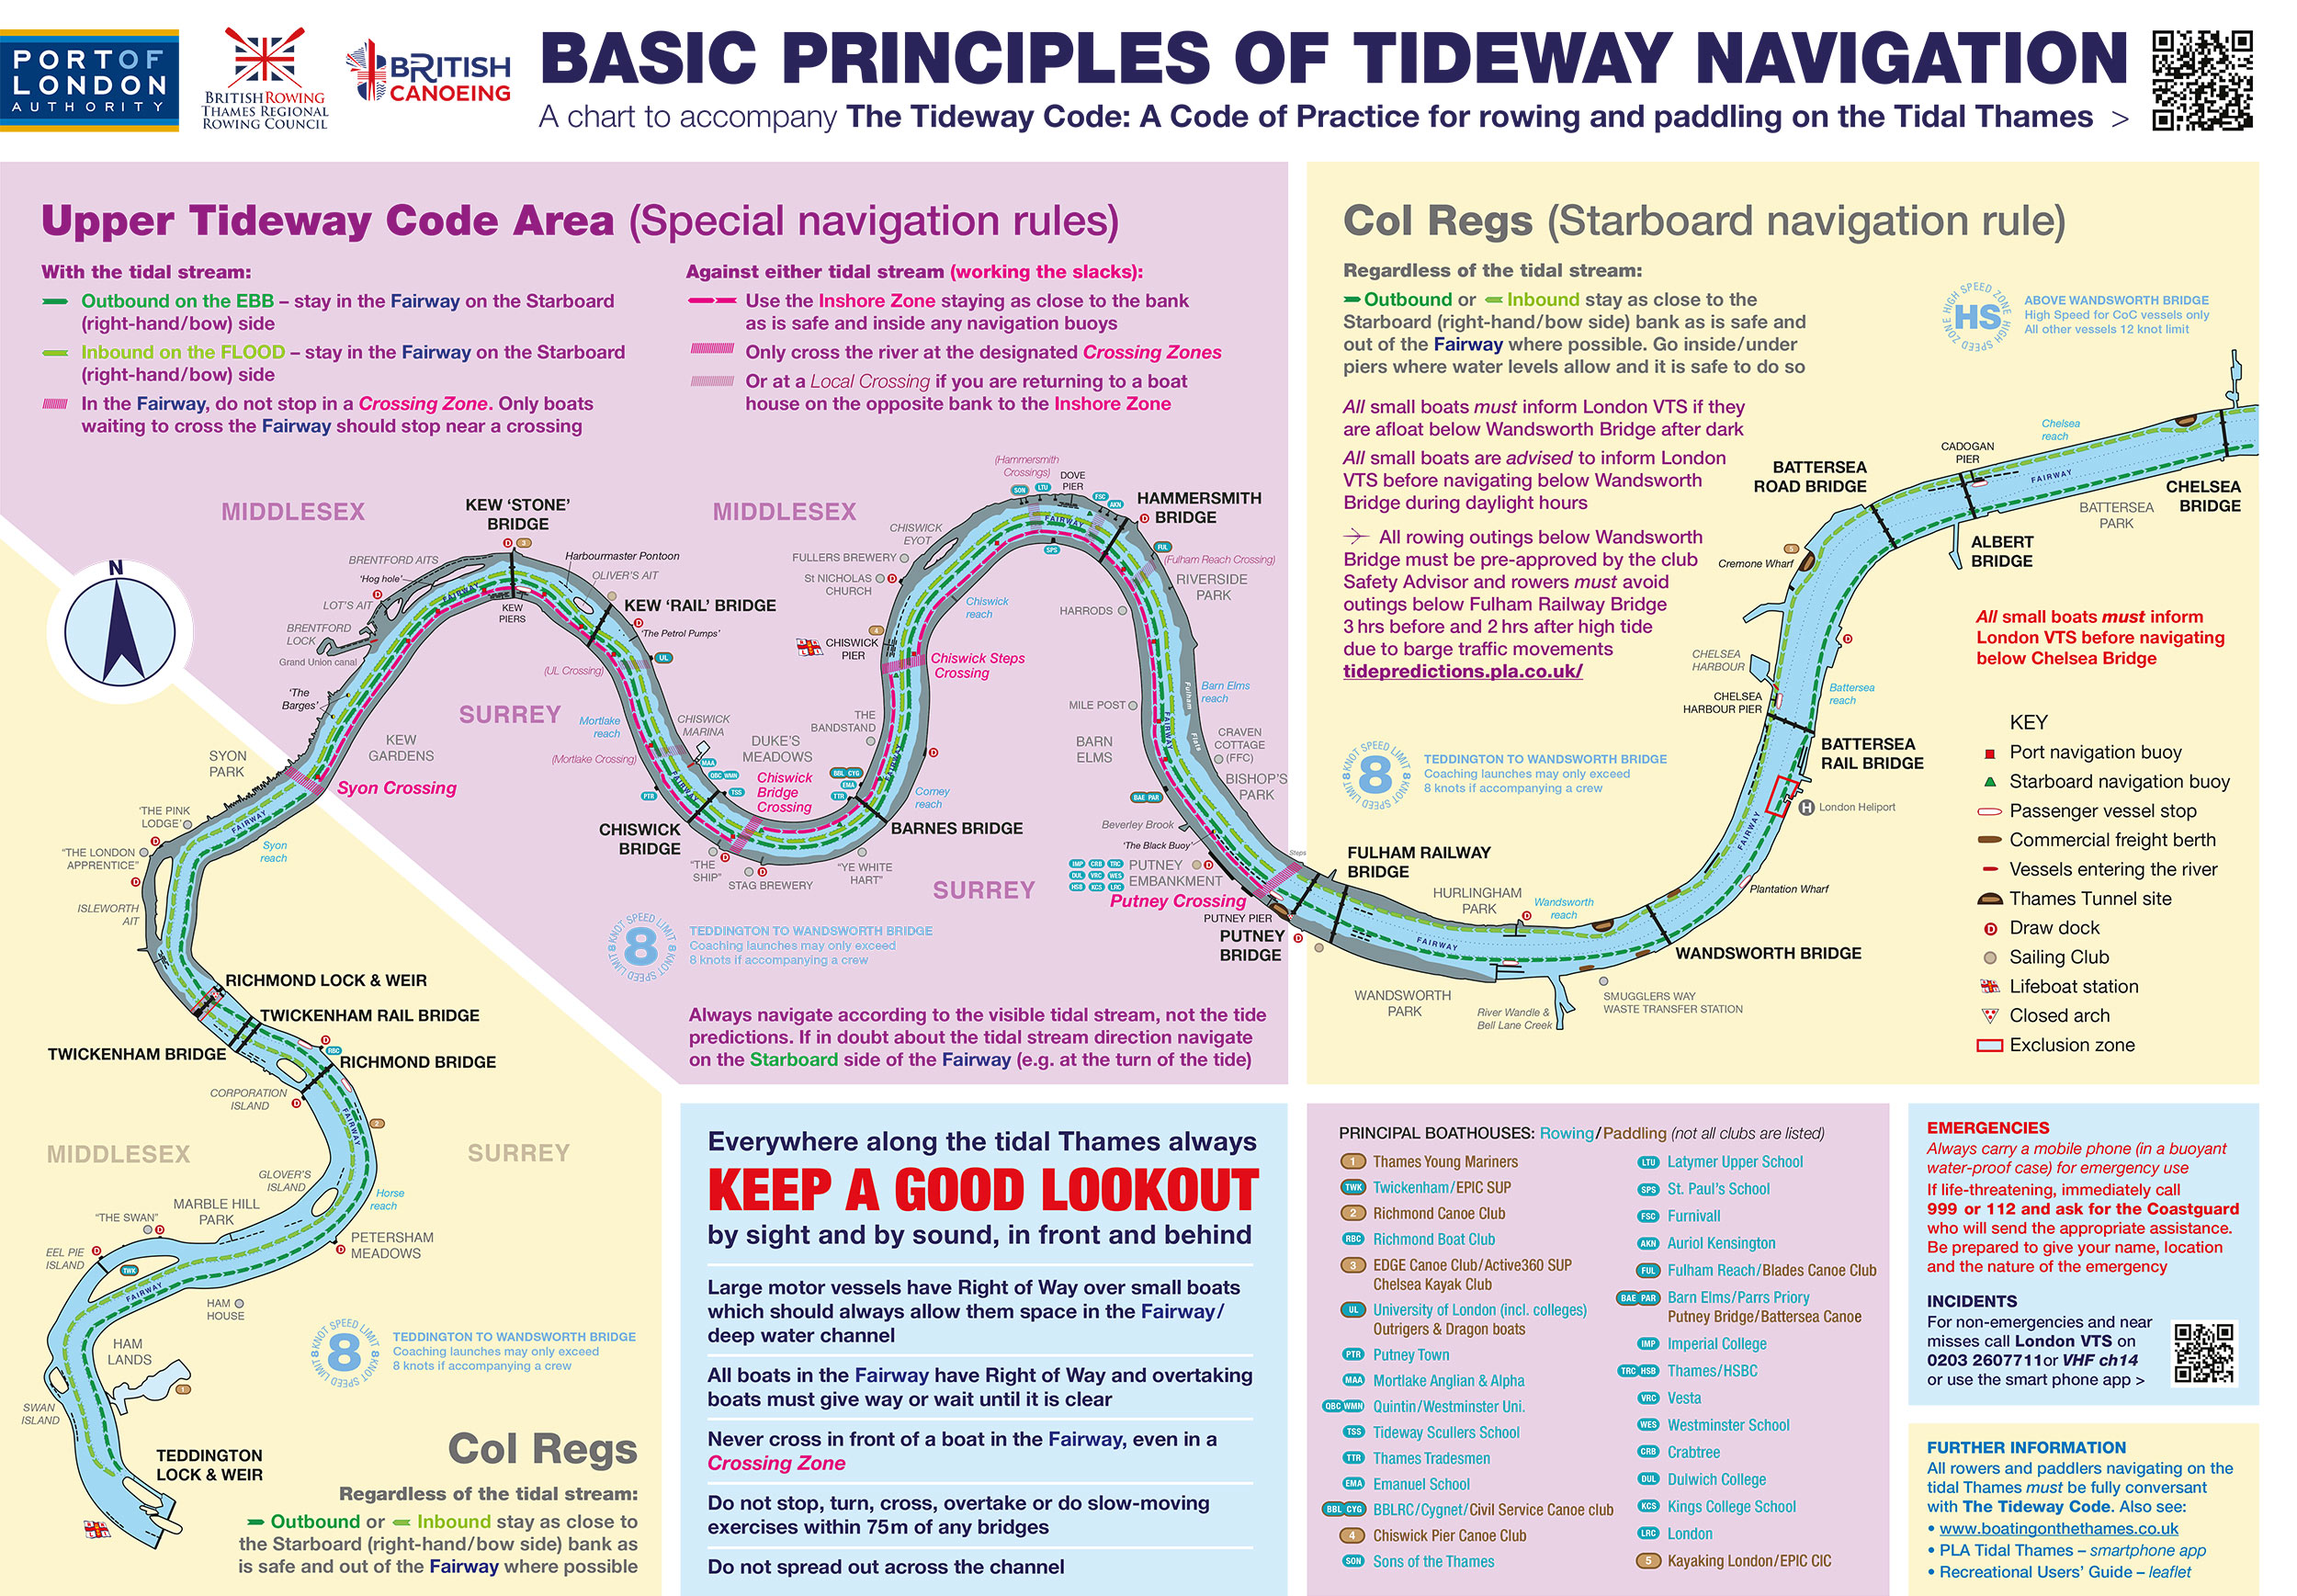 Basic principles of tideway navigation in the upper River Thames